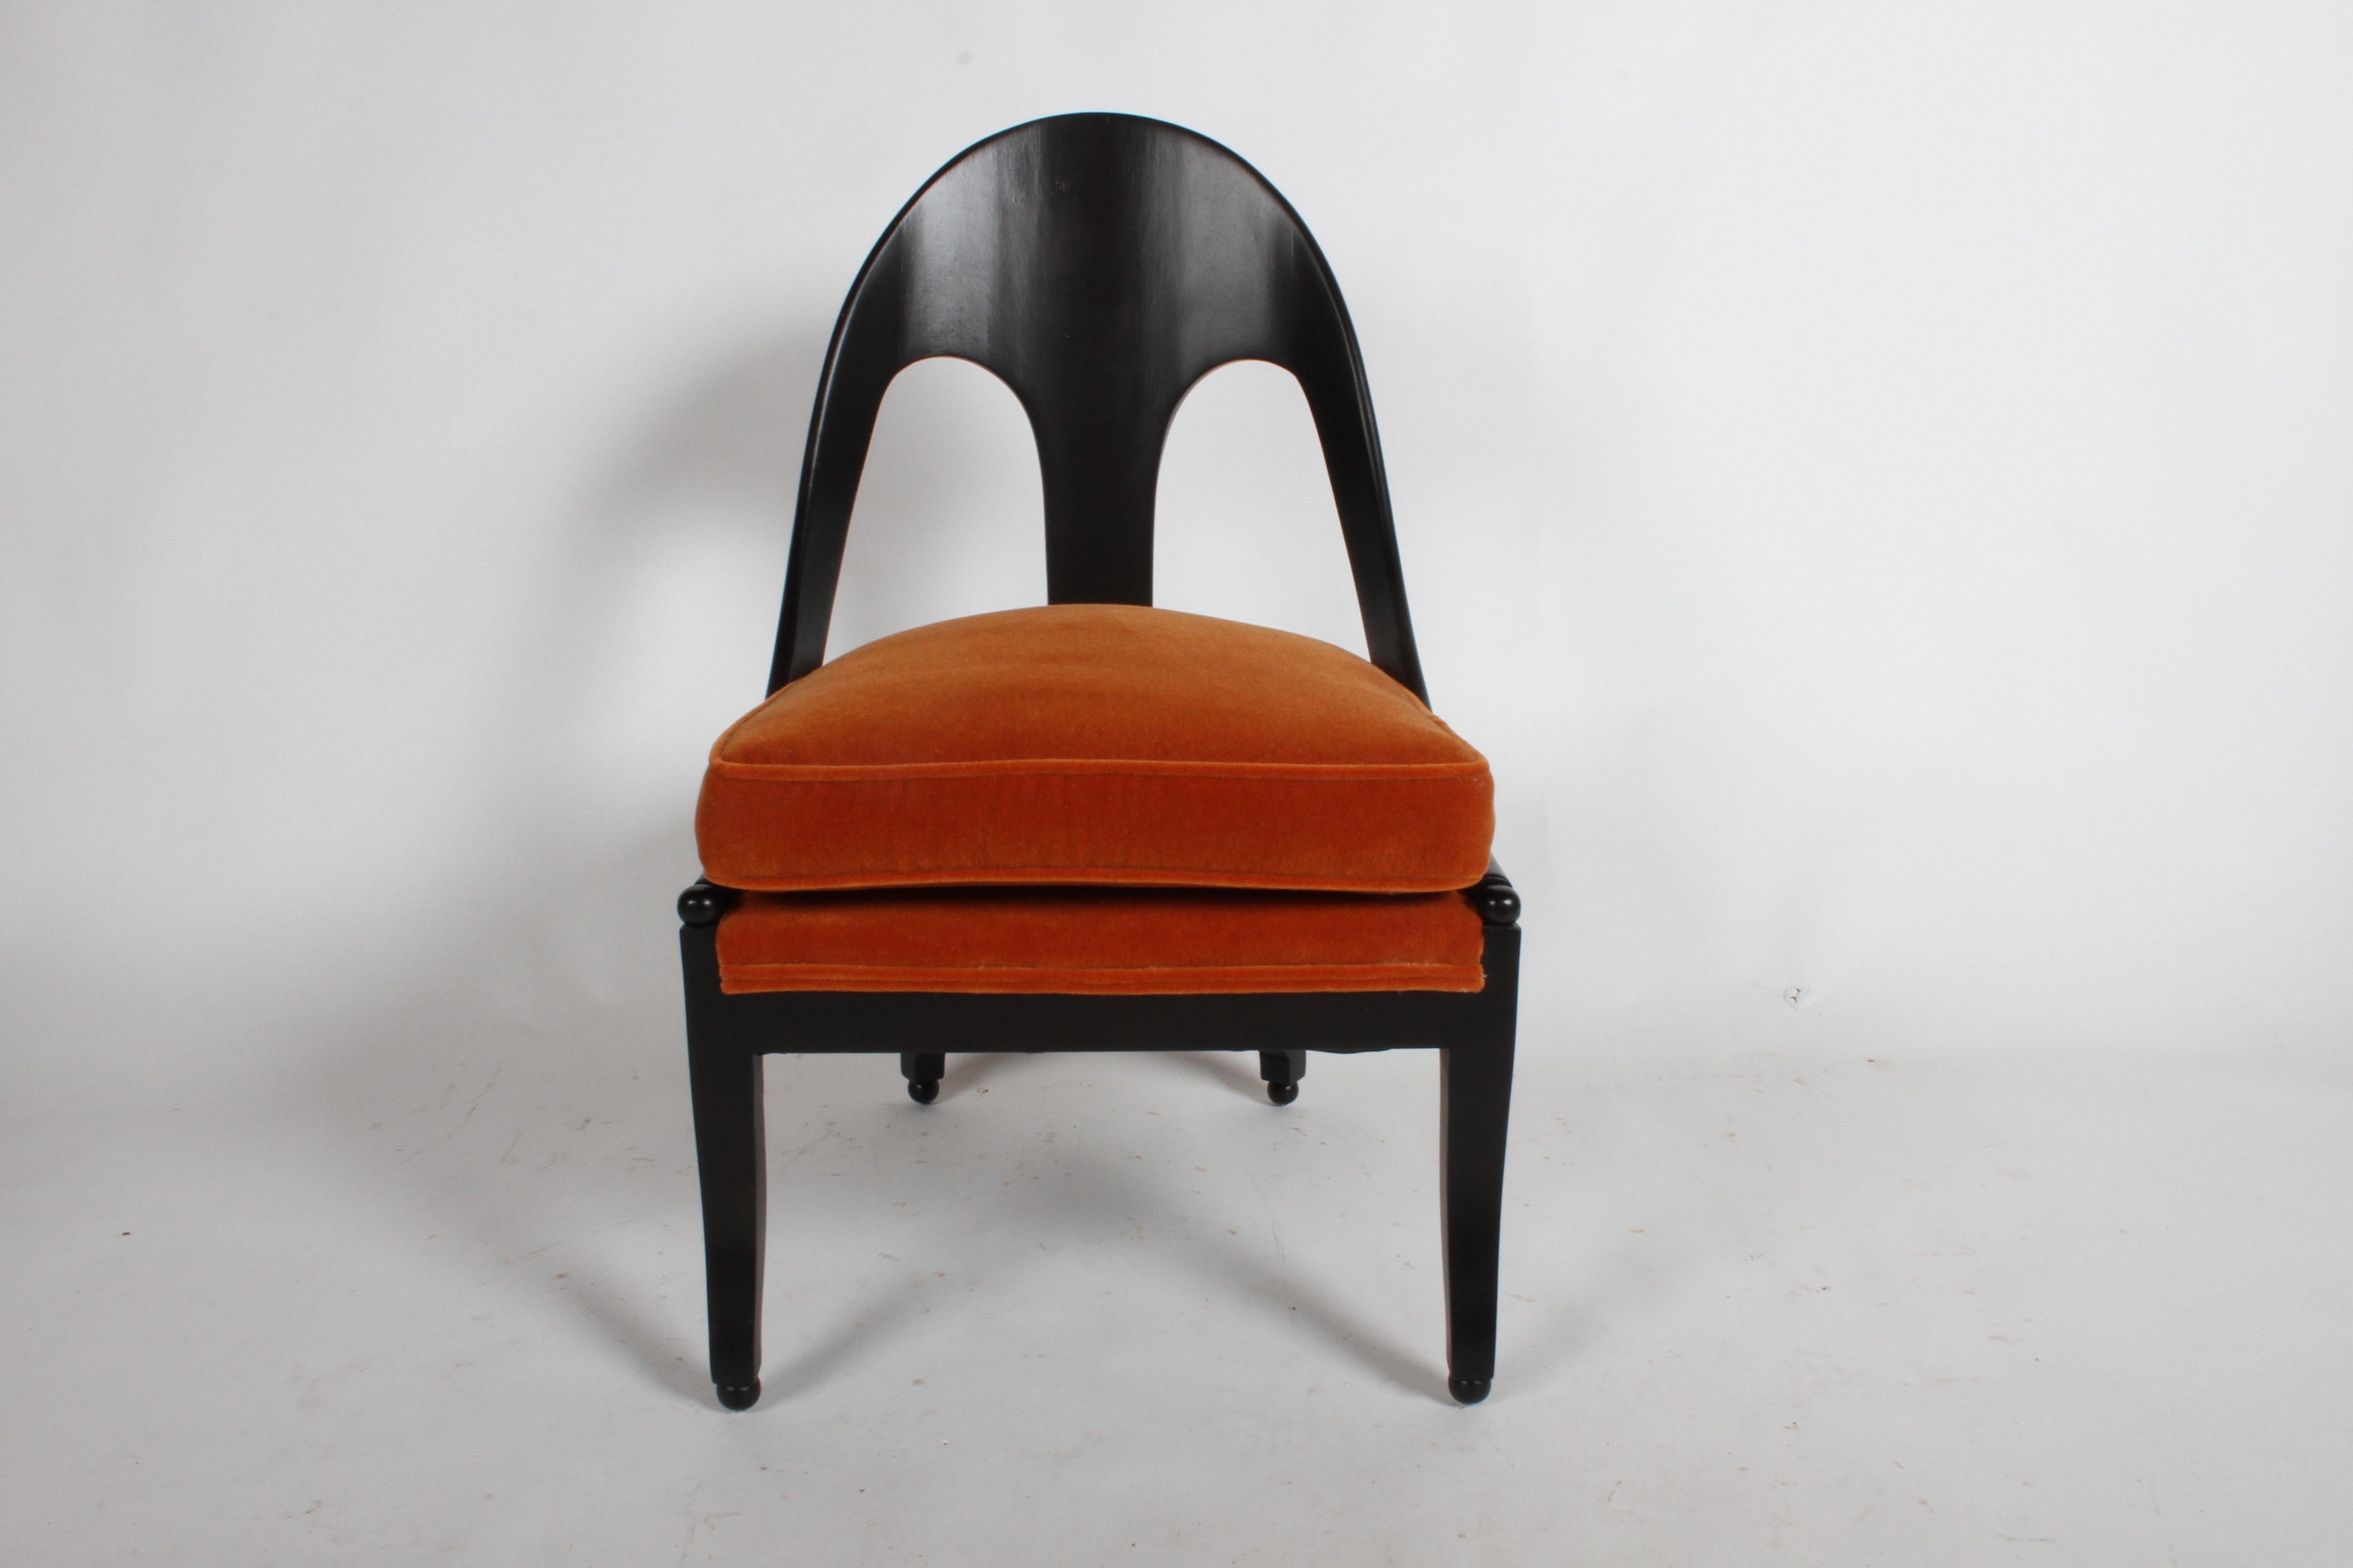 Michael Taylor : paire de chaises longues néoclassiques classiques à dos en cuillère. Refini dans une teinture ébène et mohair orange brûlé. Une seule chaise a été retapissée, il se peut qu'il n'y ait pas assez de mohair pour la deuxième chaise. Pas